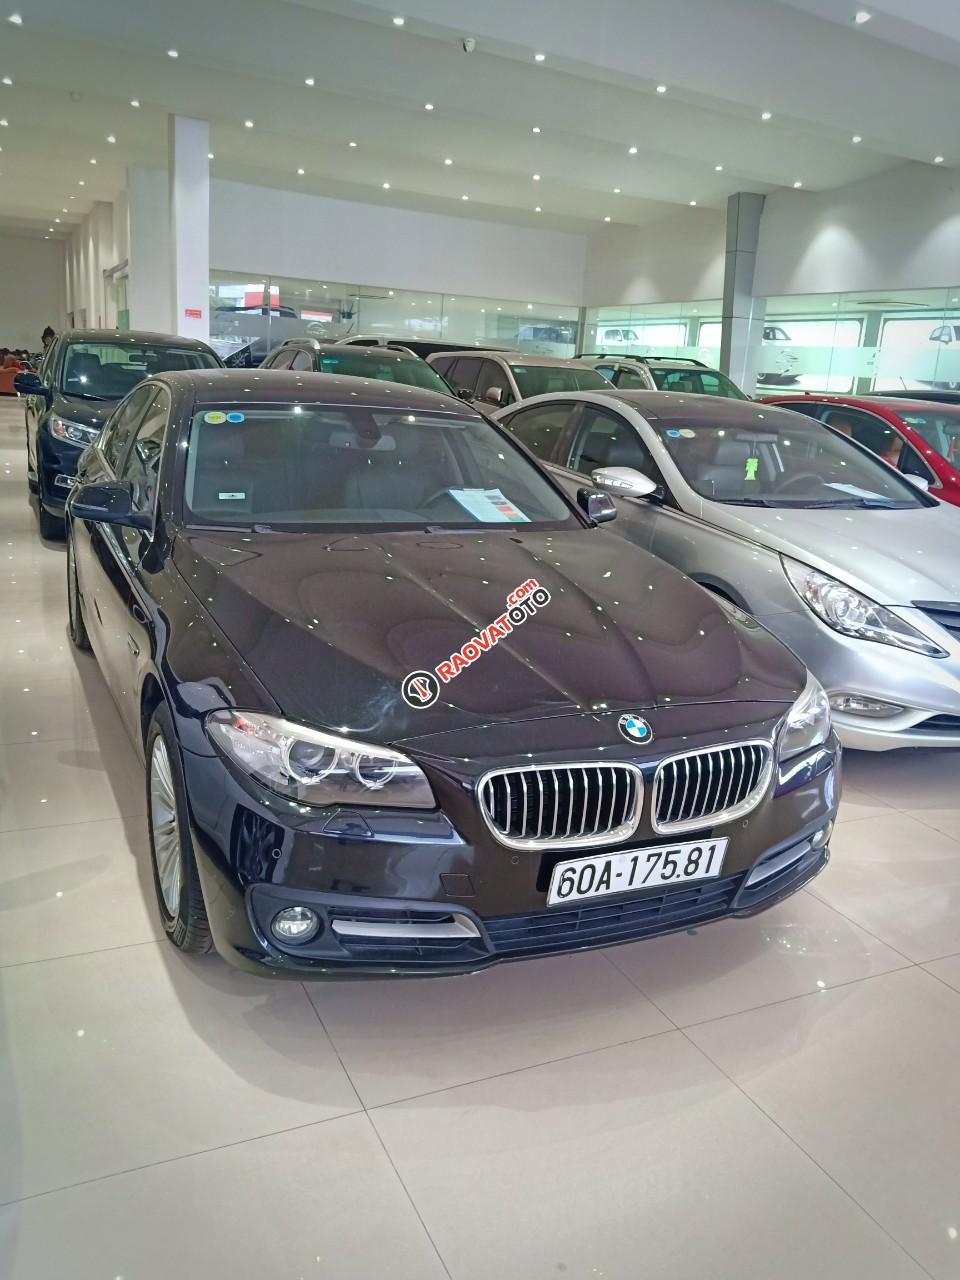 Cần bán BMW 520i đời 2014 2.0 AT xe nhập khẩu nguyên chiếc tại Đức, odo: 53.000 km, màu đen, xe đẹp-7